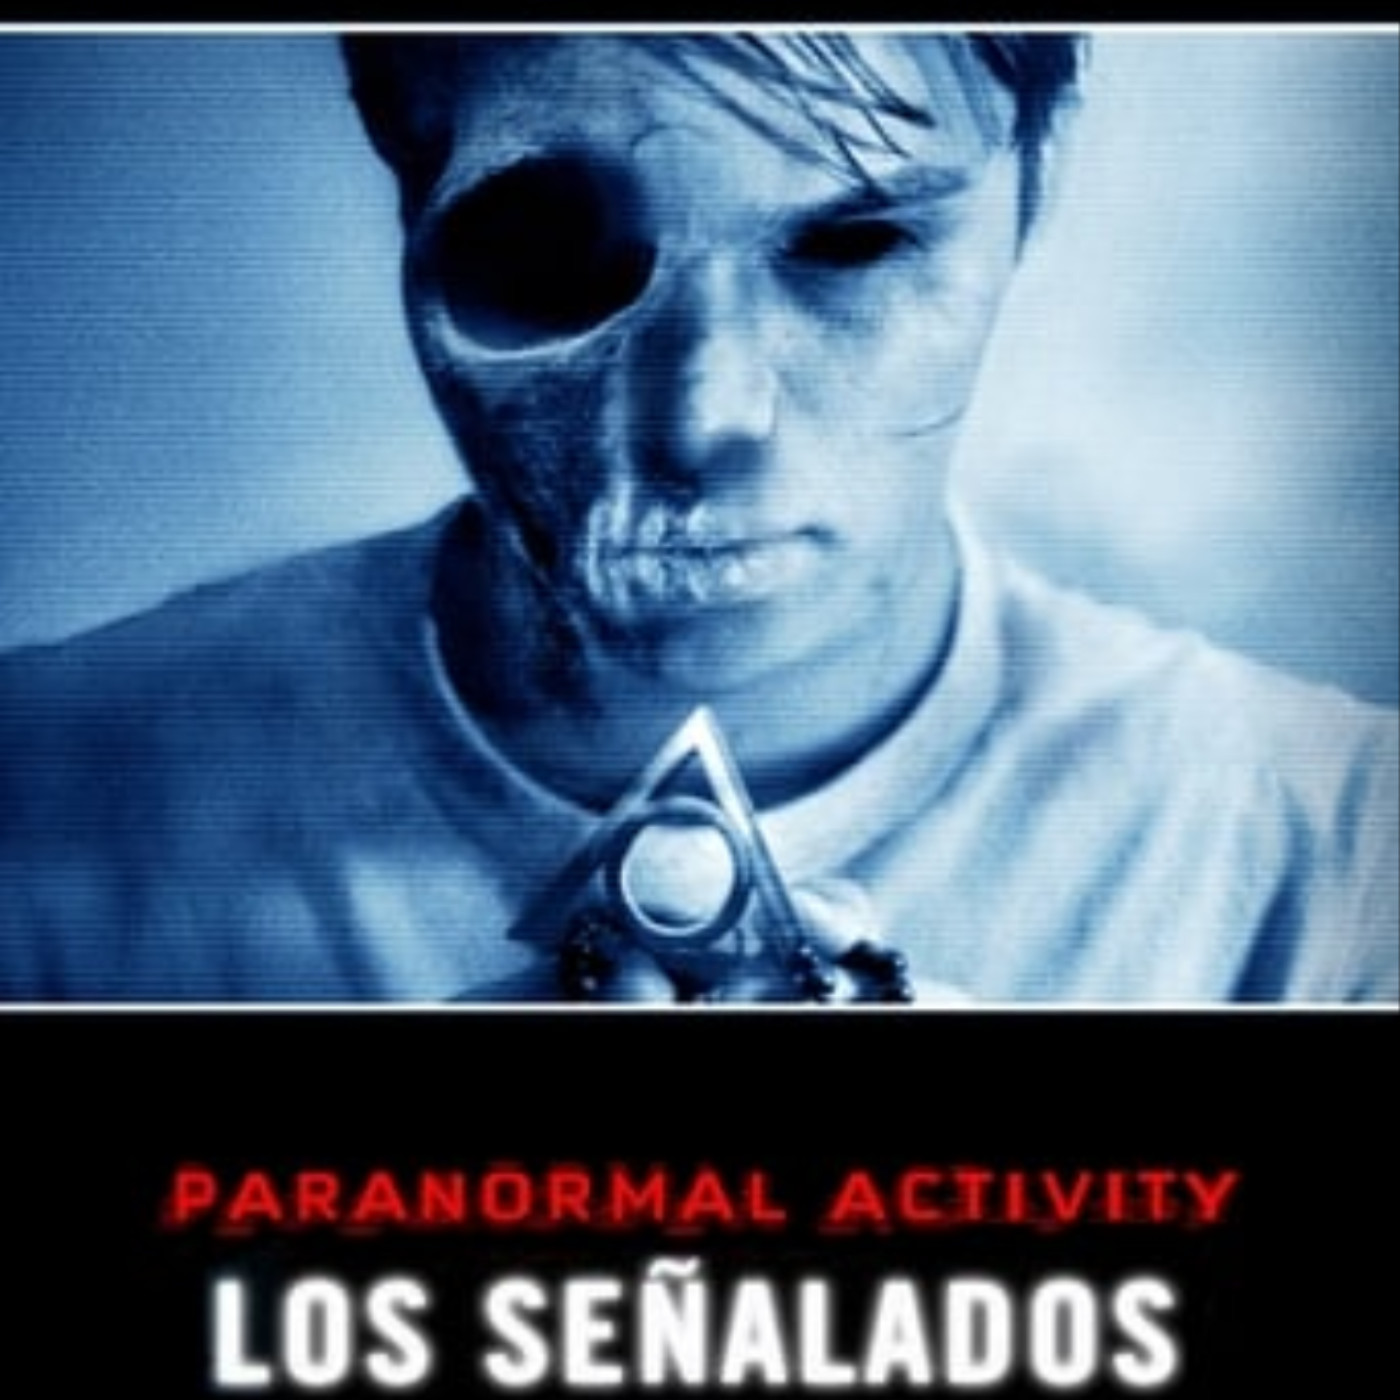 Ver Paranormal Activity: Los señalados 2014 online gratis en español y  latino | Podcast on SoundOn